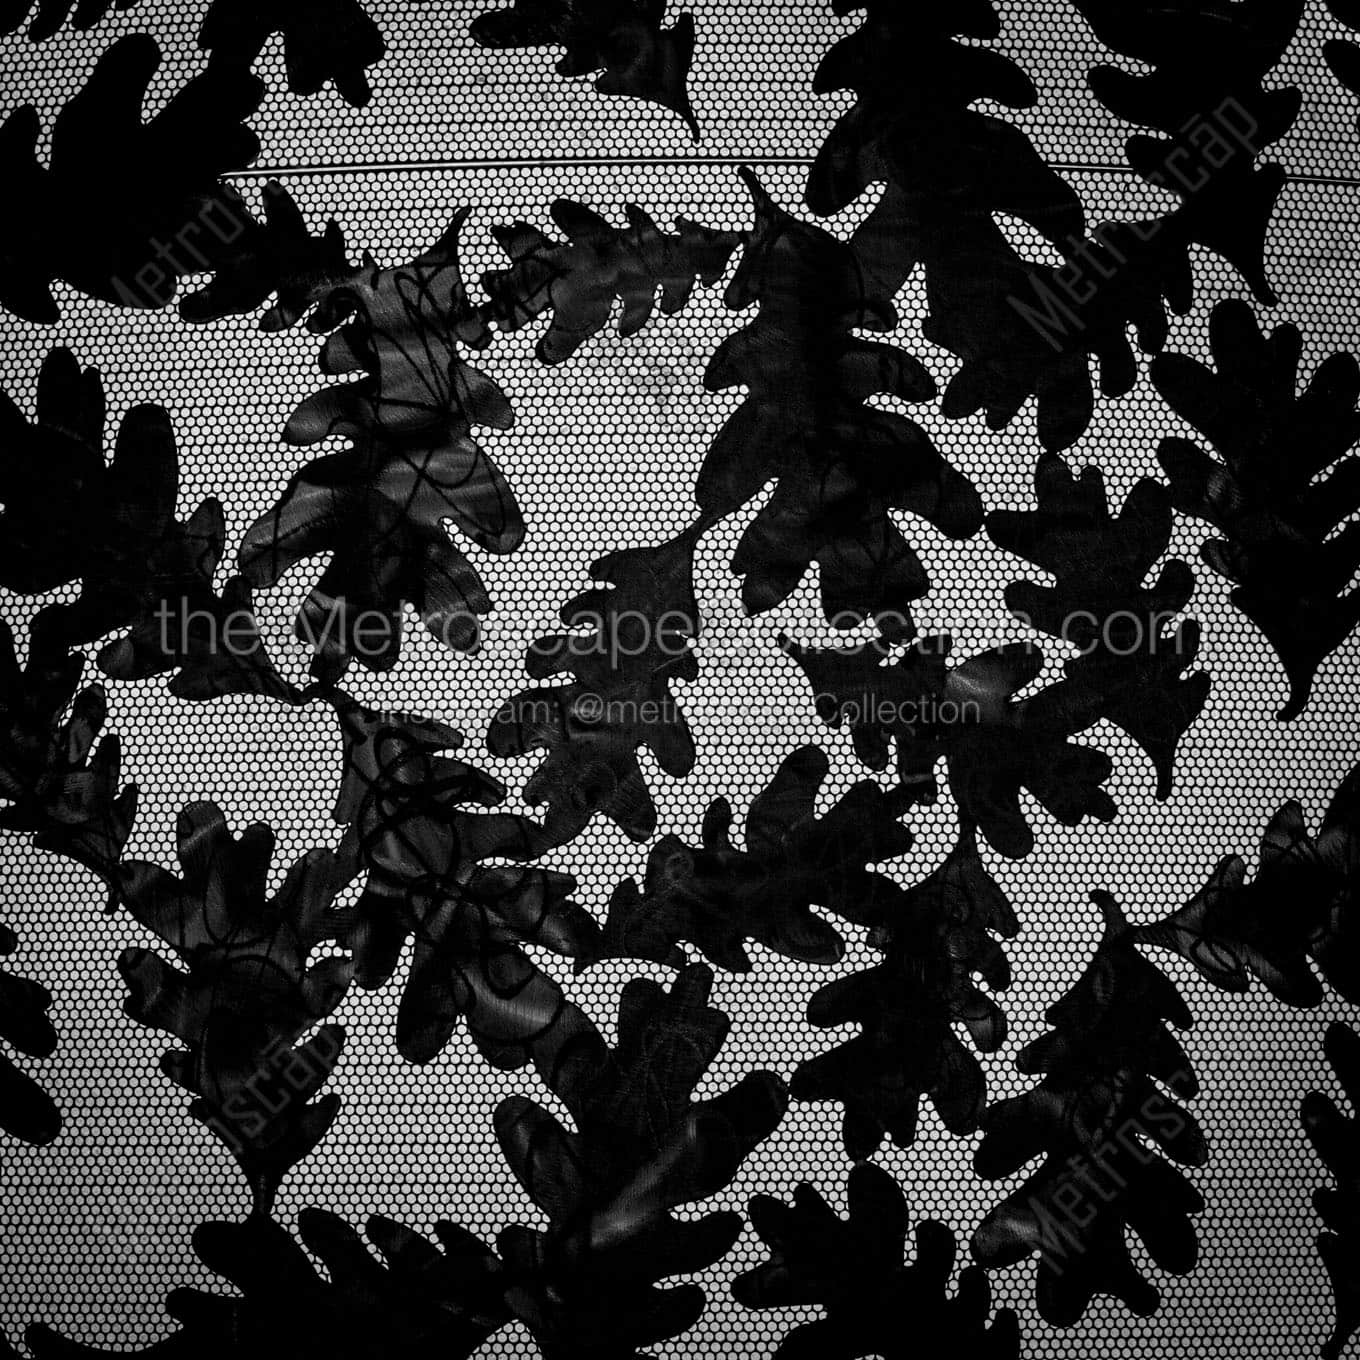 oak leaves light pedestal Black & White Office Art